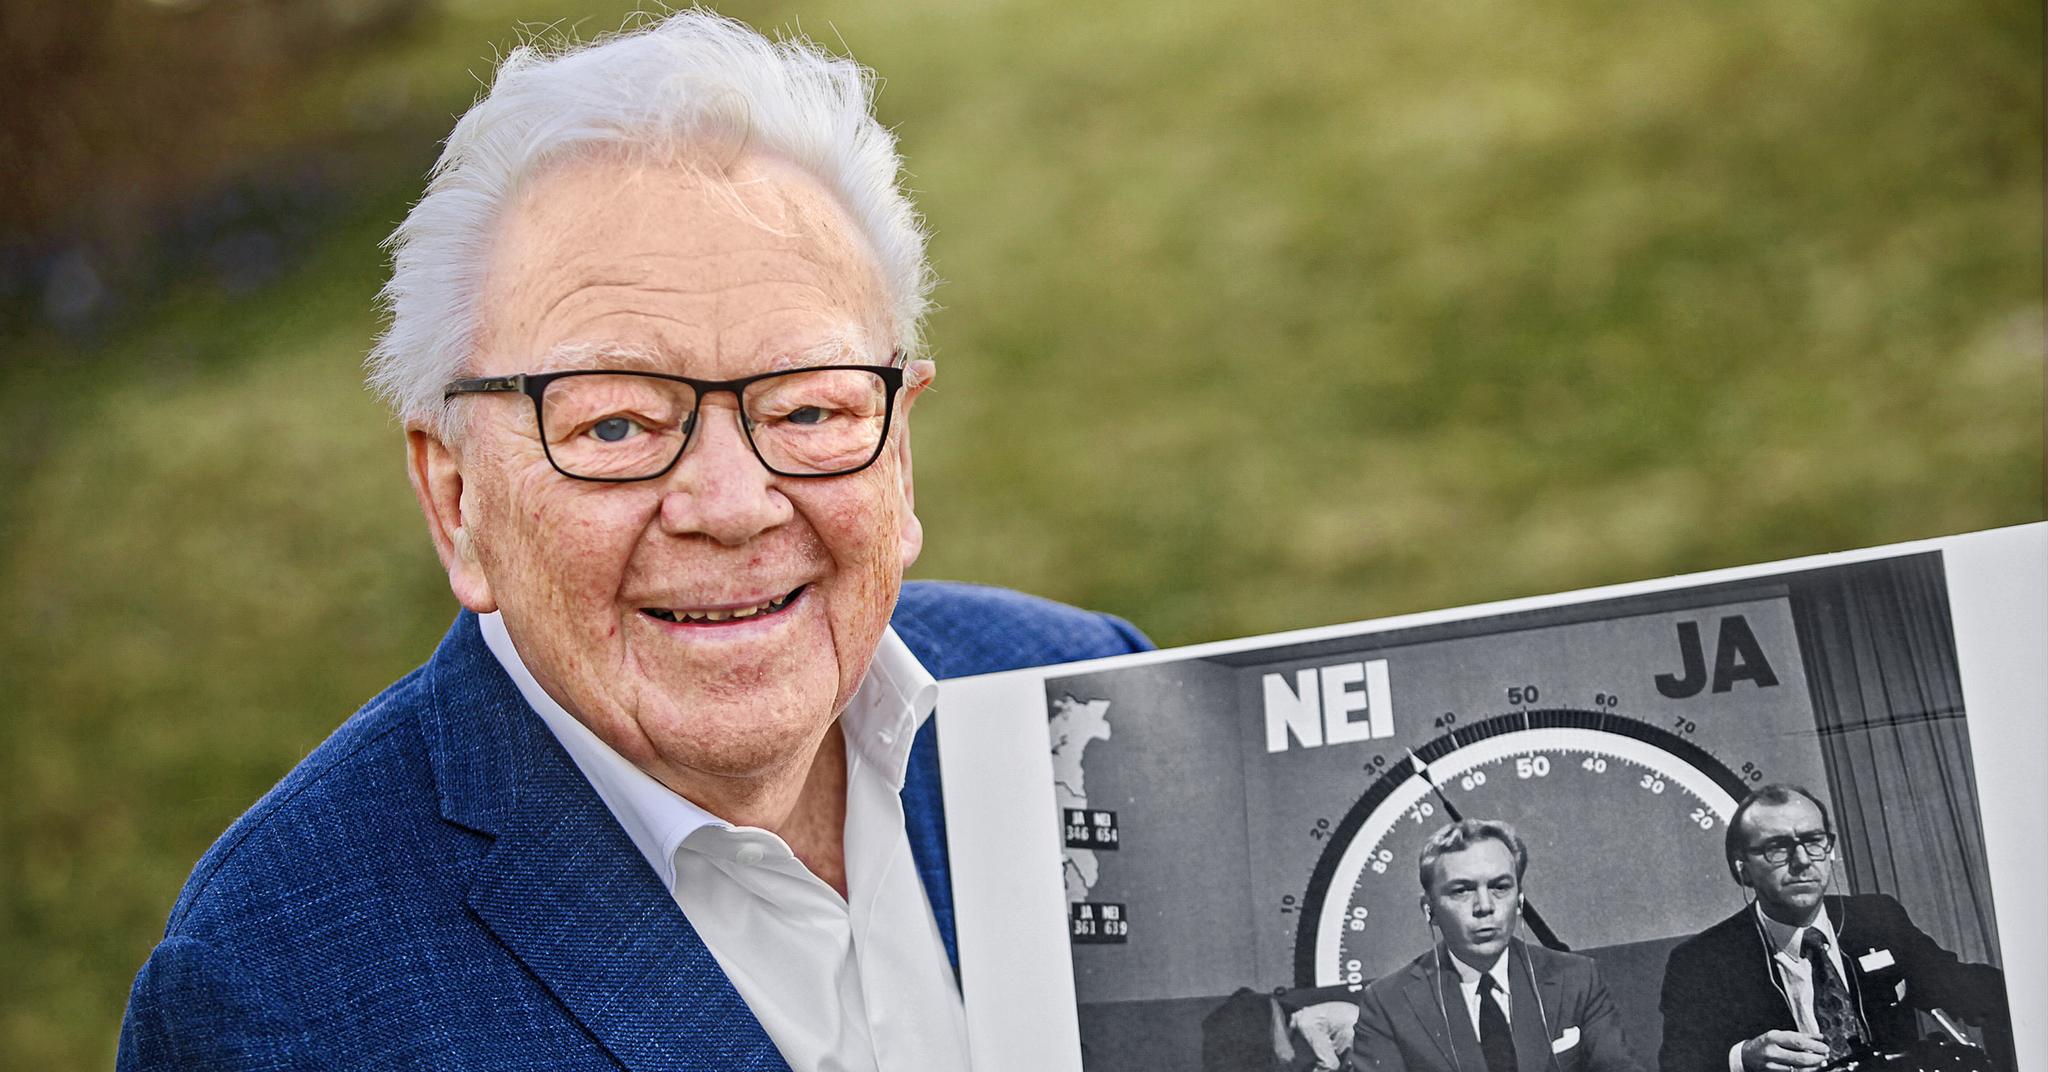 NRK-veteranen Geir Helljesen trives som pensjonist hjemme på Skøyenåsen i Oslo. Han viser med glede frem det historiske bildet av kollega Lars-Jacob Krogh og seg selv valgnatten i 1972. Et av de klareste minnene i Helljesens profesjonelle liv.